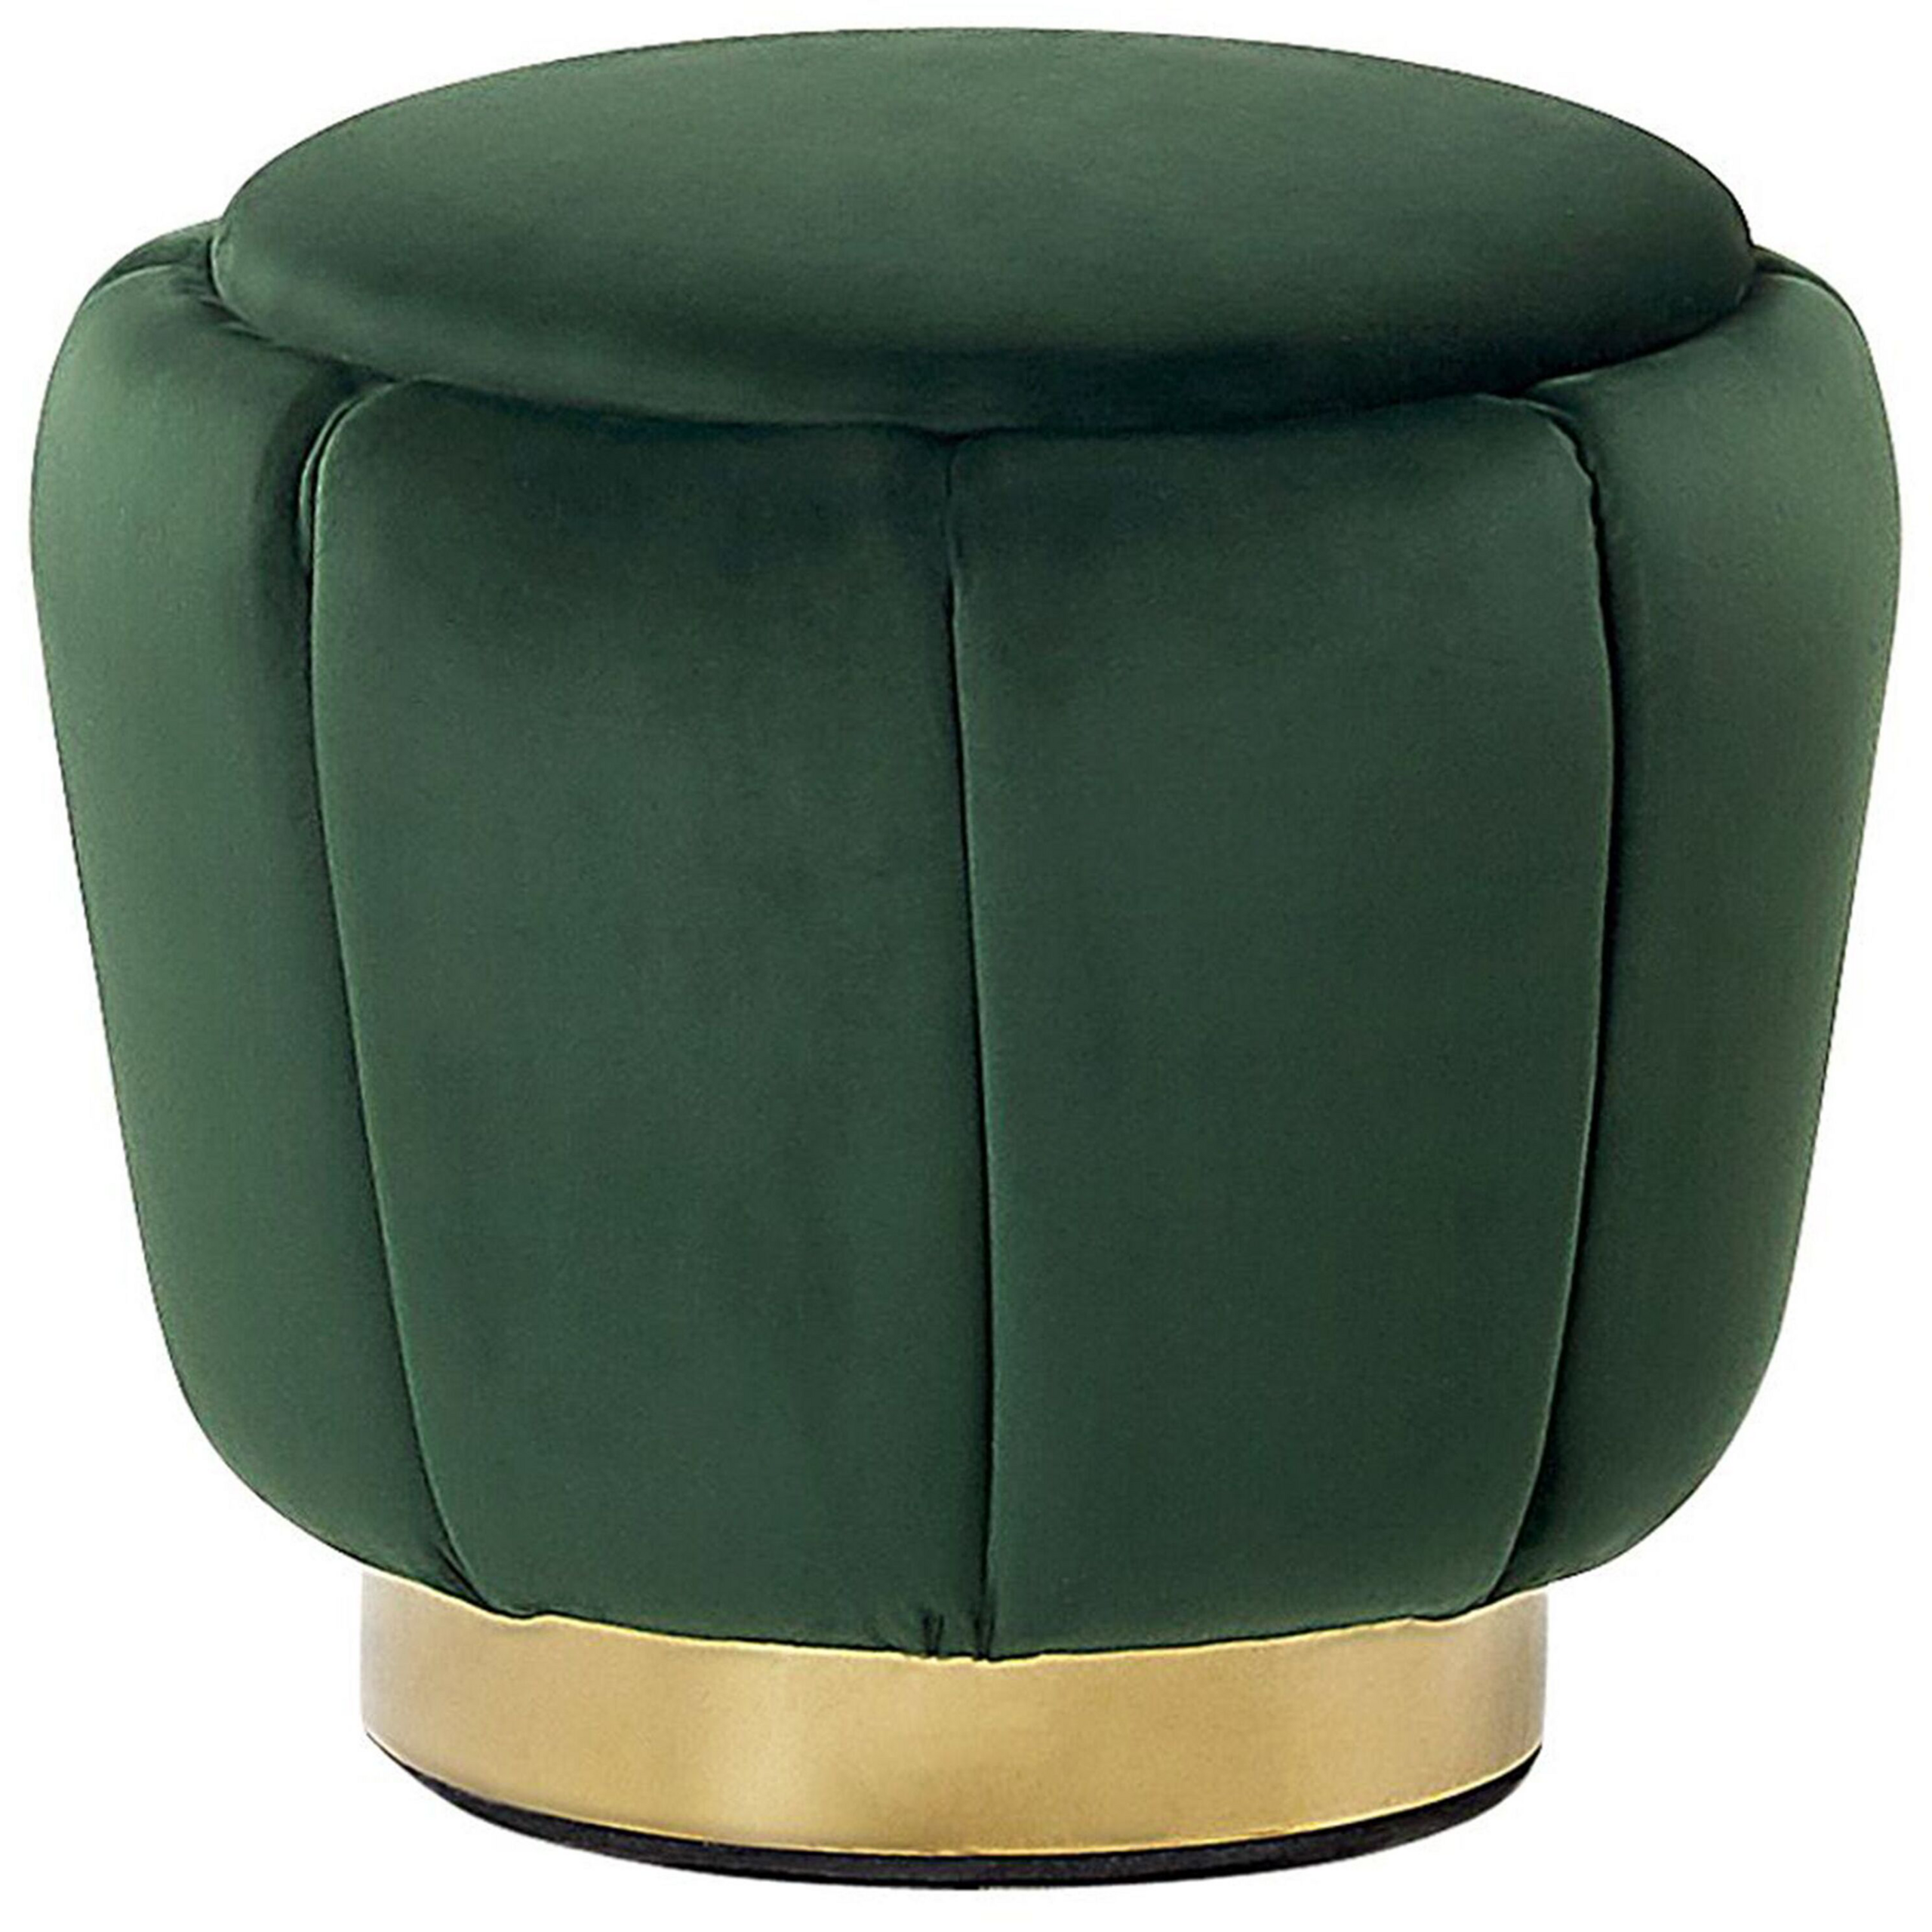 Beliani Pufe estofado em veludo verde escuro com base dourada ø 43 x 37 cm design moderno estilo glamoroso